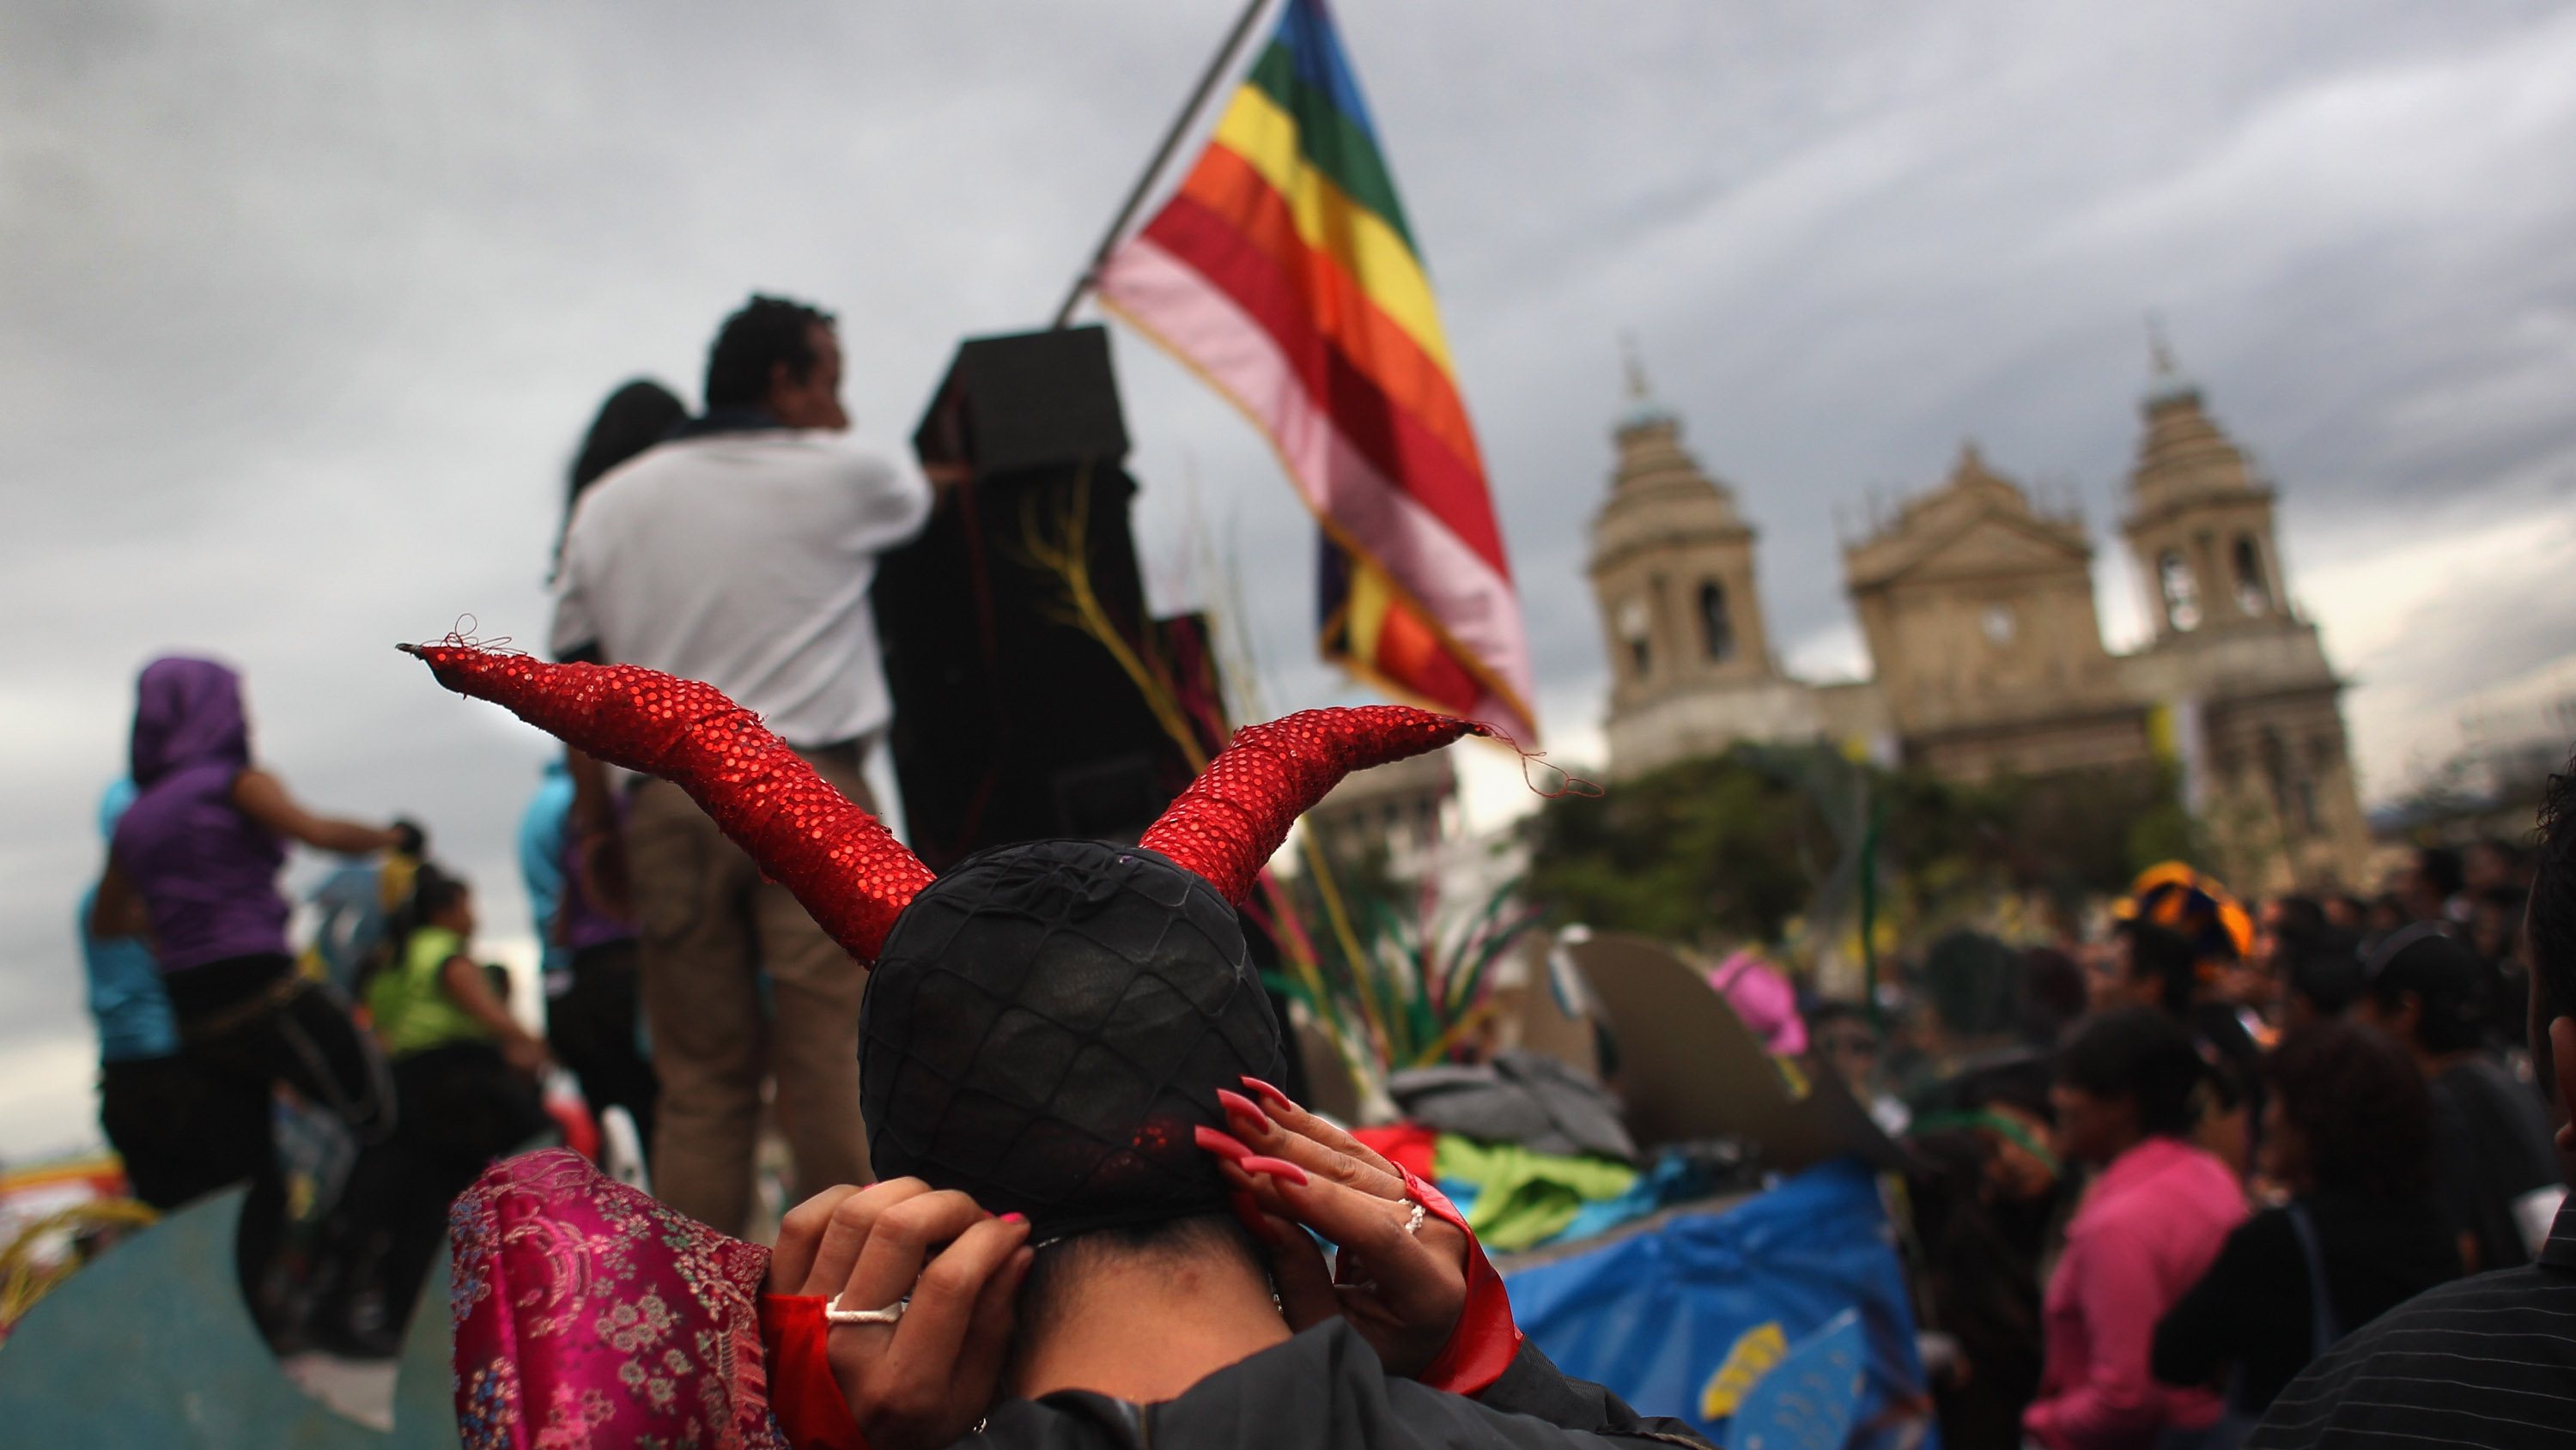 Marcha pelos direitos LGBT no Guatemala, em junho de 2021